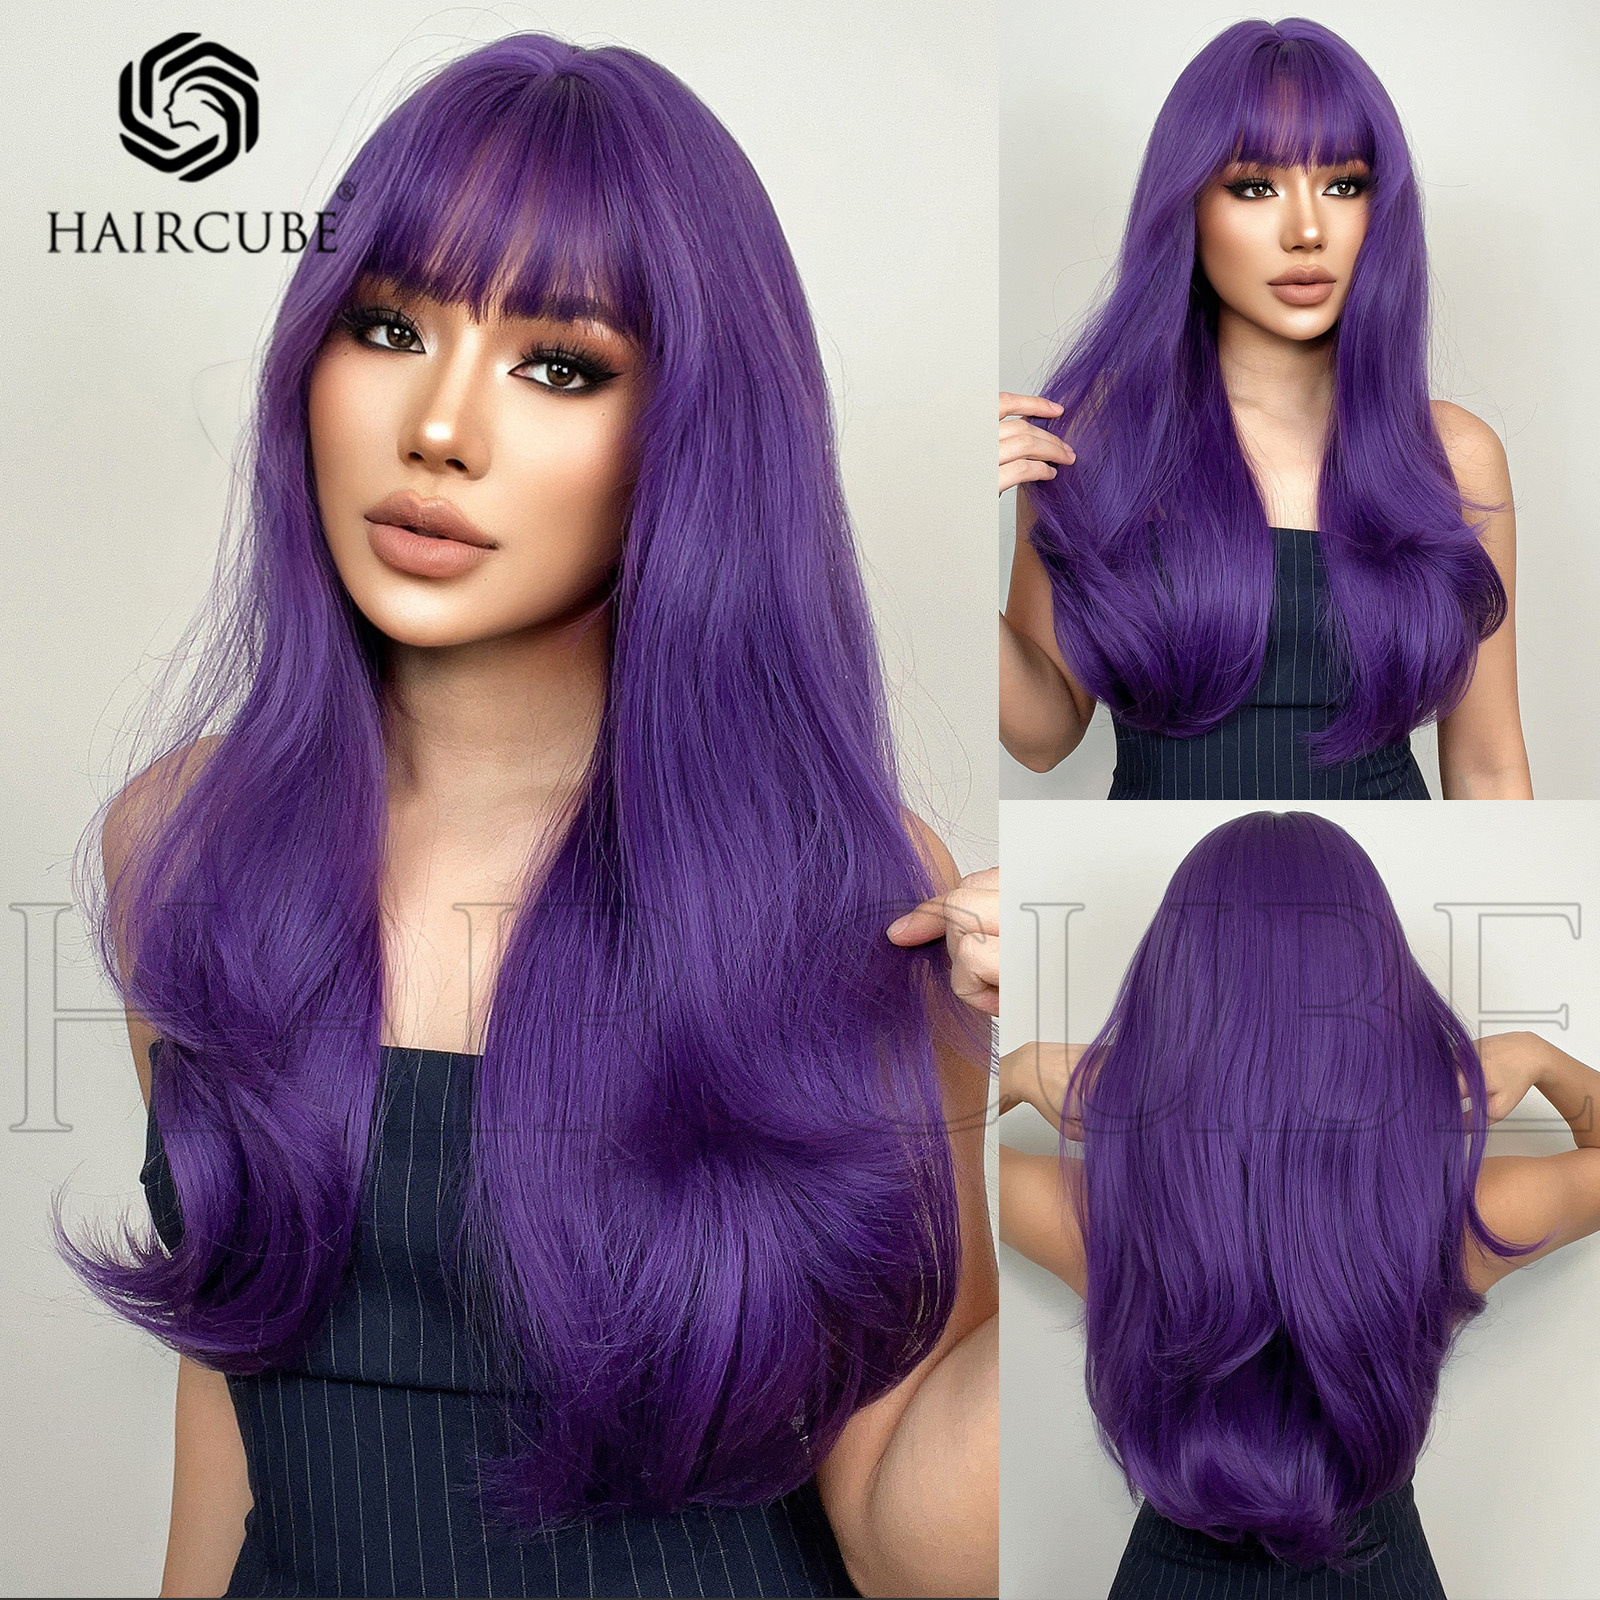 欧美紫色长卷发全头套假发 Purple long curly hair full set wig 美发护发/假发 日常整顶假发 原图主图